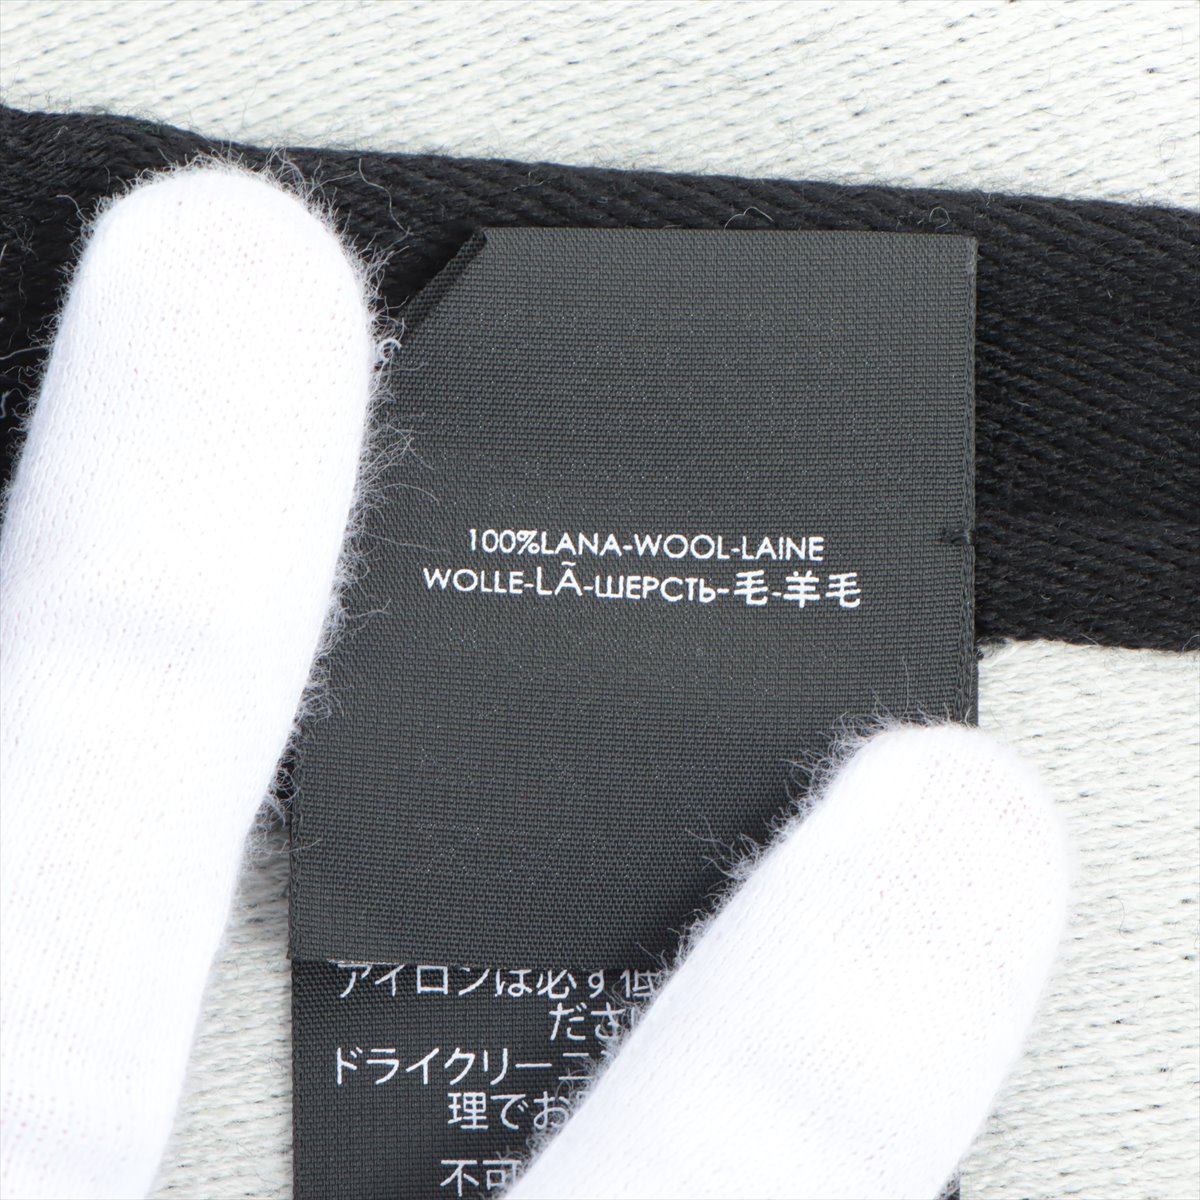 バレンシアガ ロゴ ストール ウール ブラック×ホワイト マフラー ブランケットスカーフ